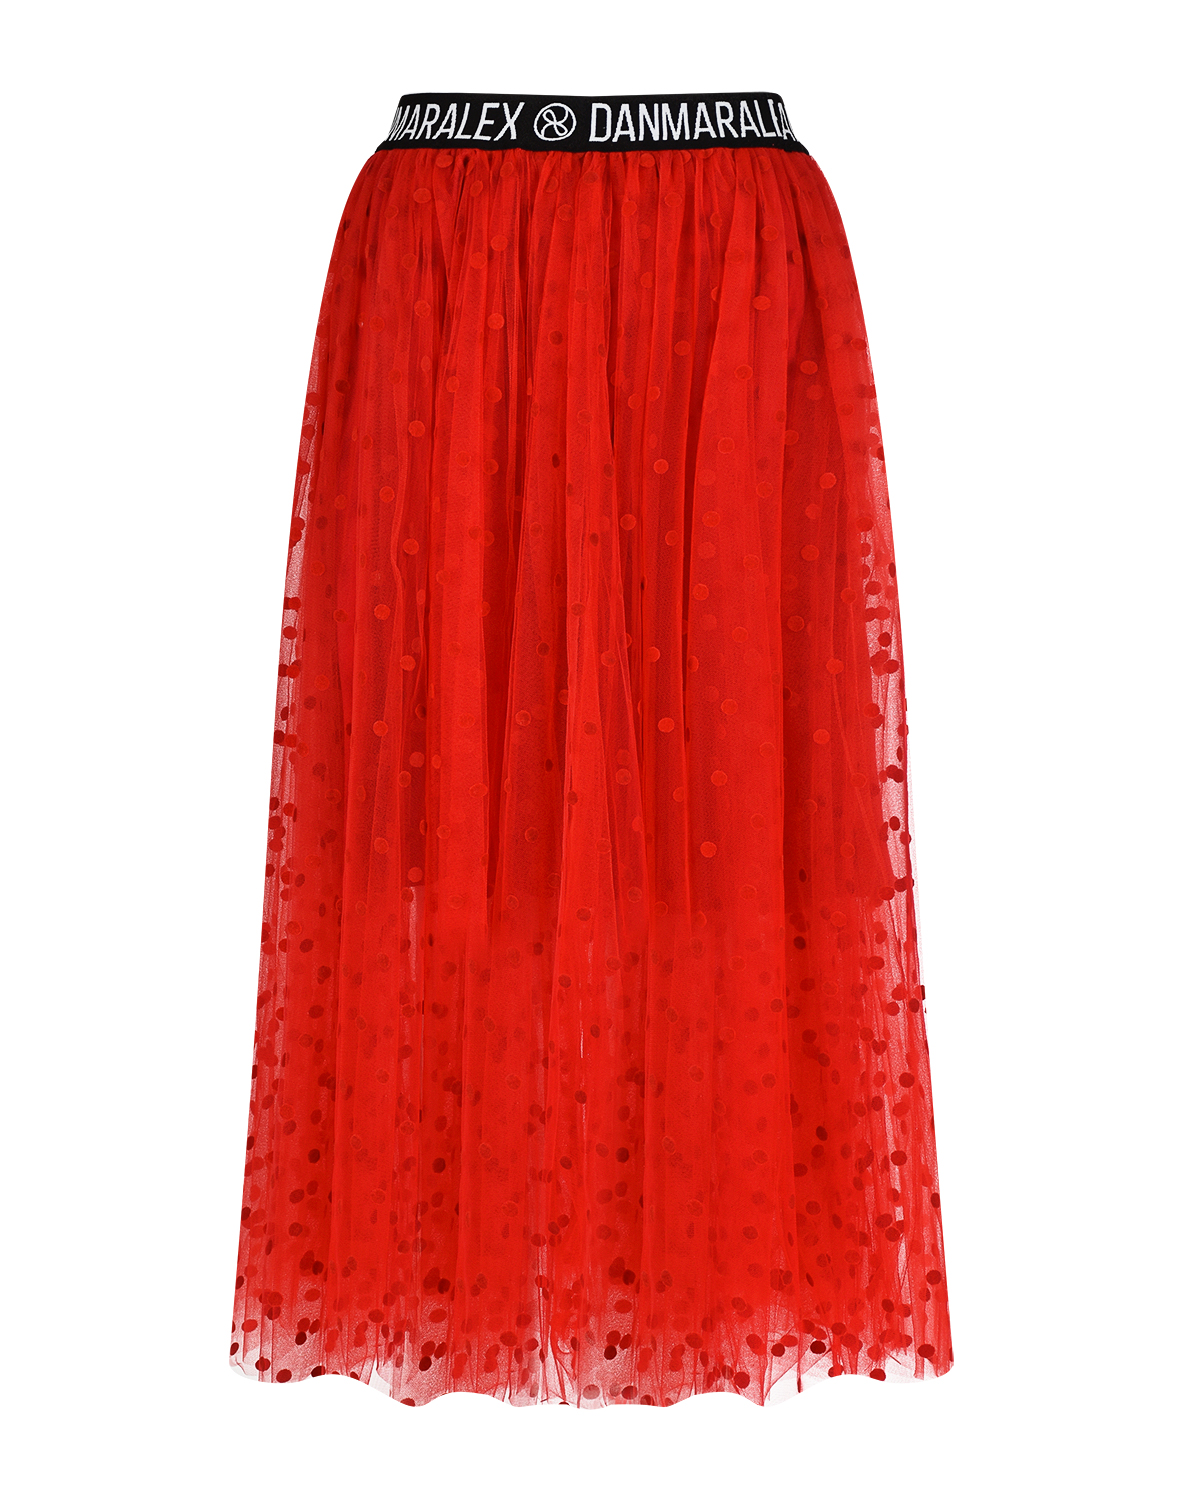 Красная юбка в горошек Dan Maralex, размер 42, цвет красный - фото 5